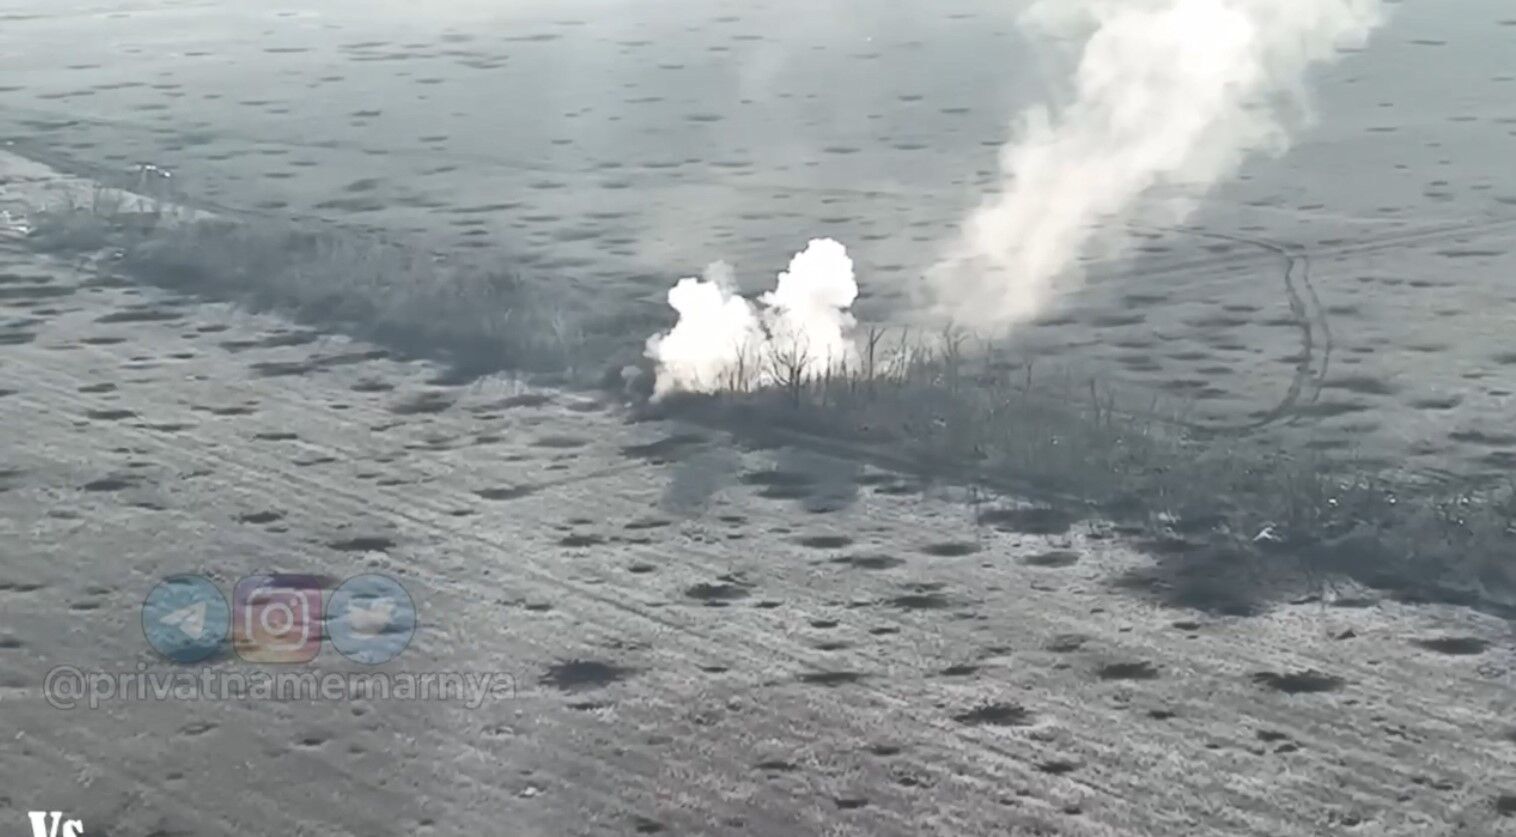 Під Вугледаром бійці ЗСУ знищили морпіхів армії рф: відео від 72-ї бригади